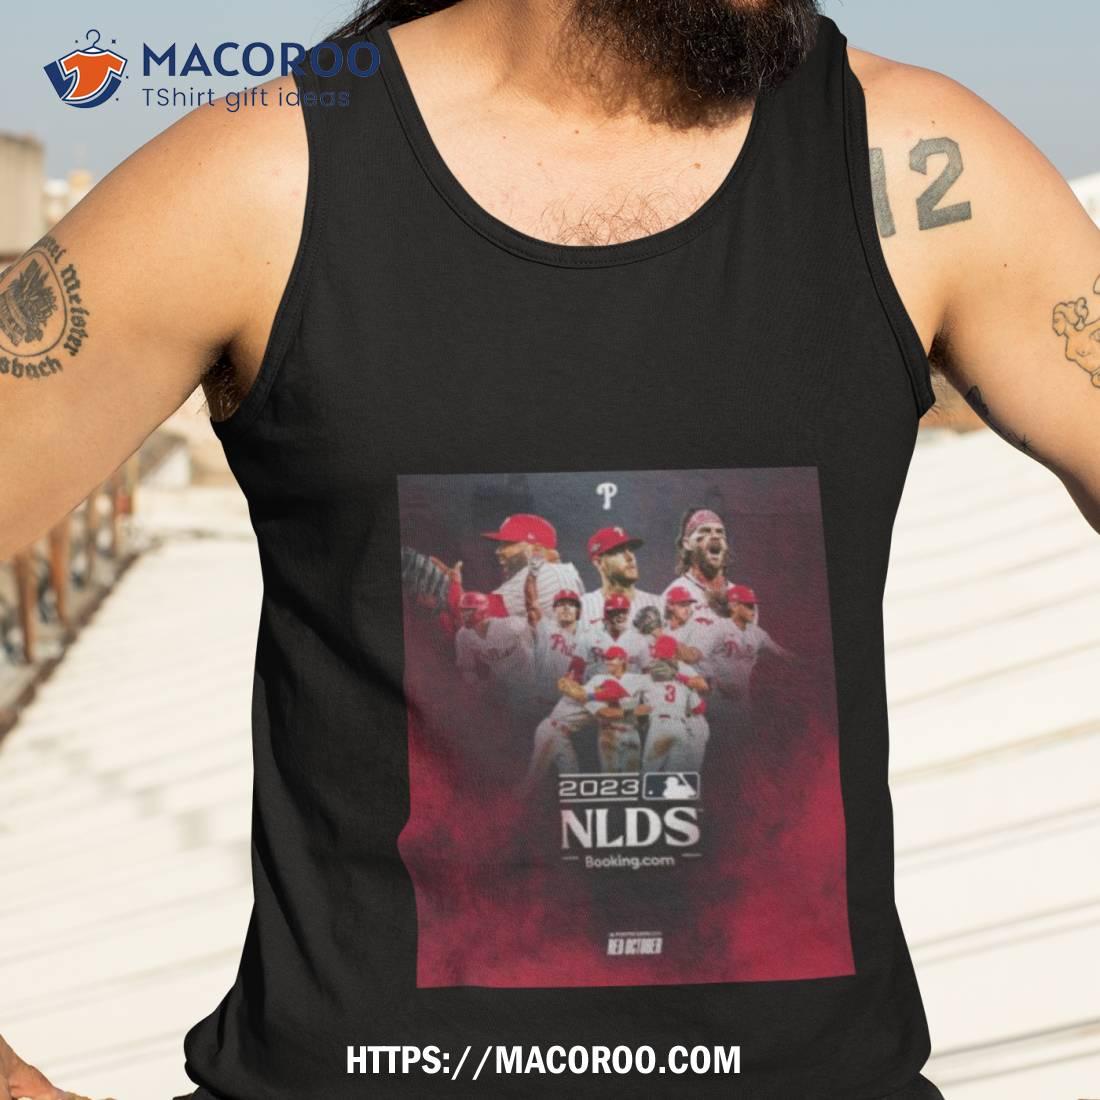 Compa - Hector Neris T-Shirt, Philadelphia Major League Baseball